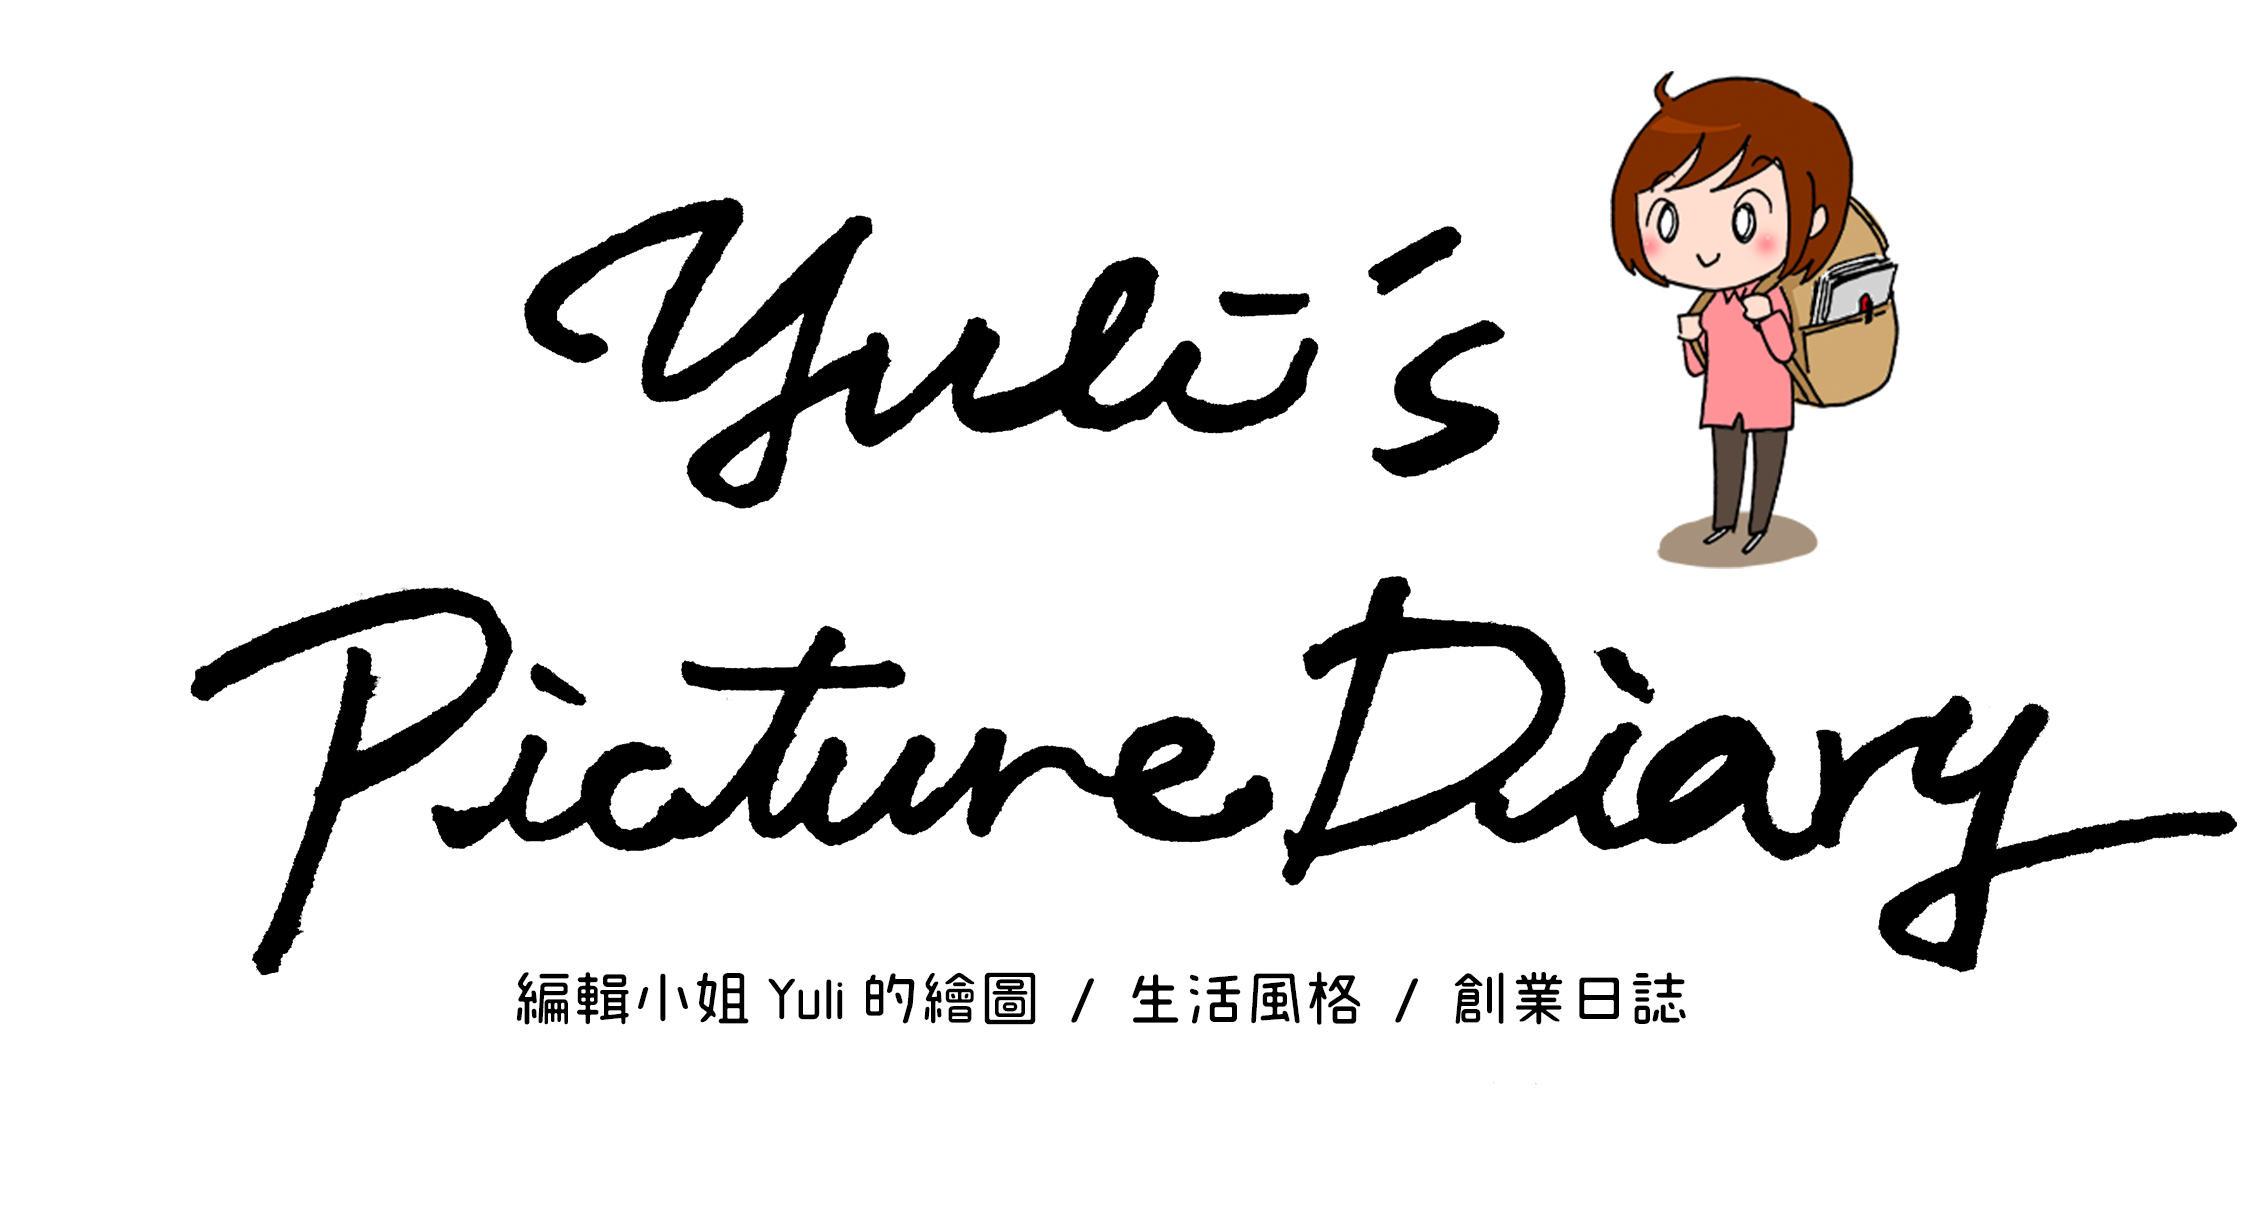 編輯小姐 Yuli 的繪圖日誌